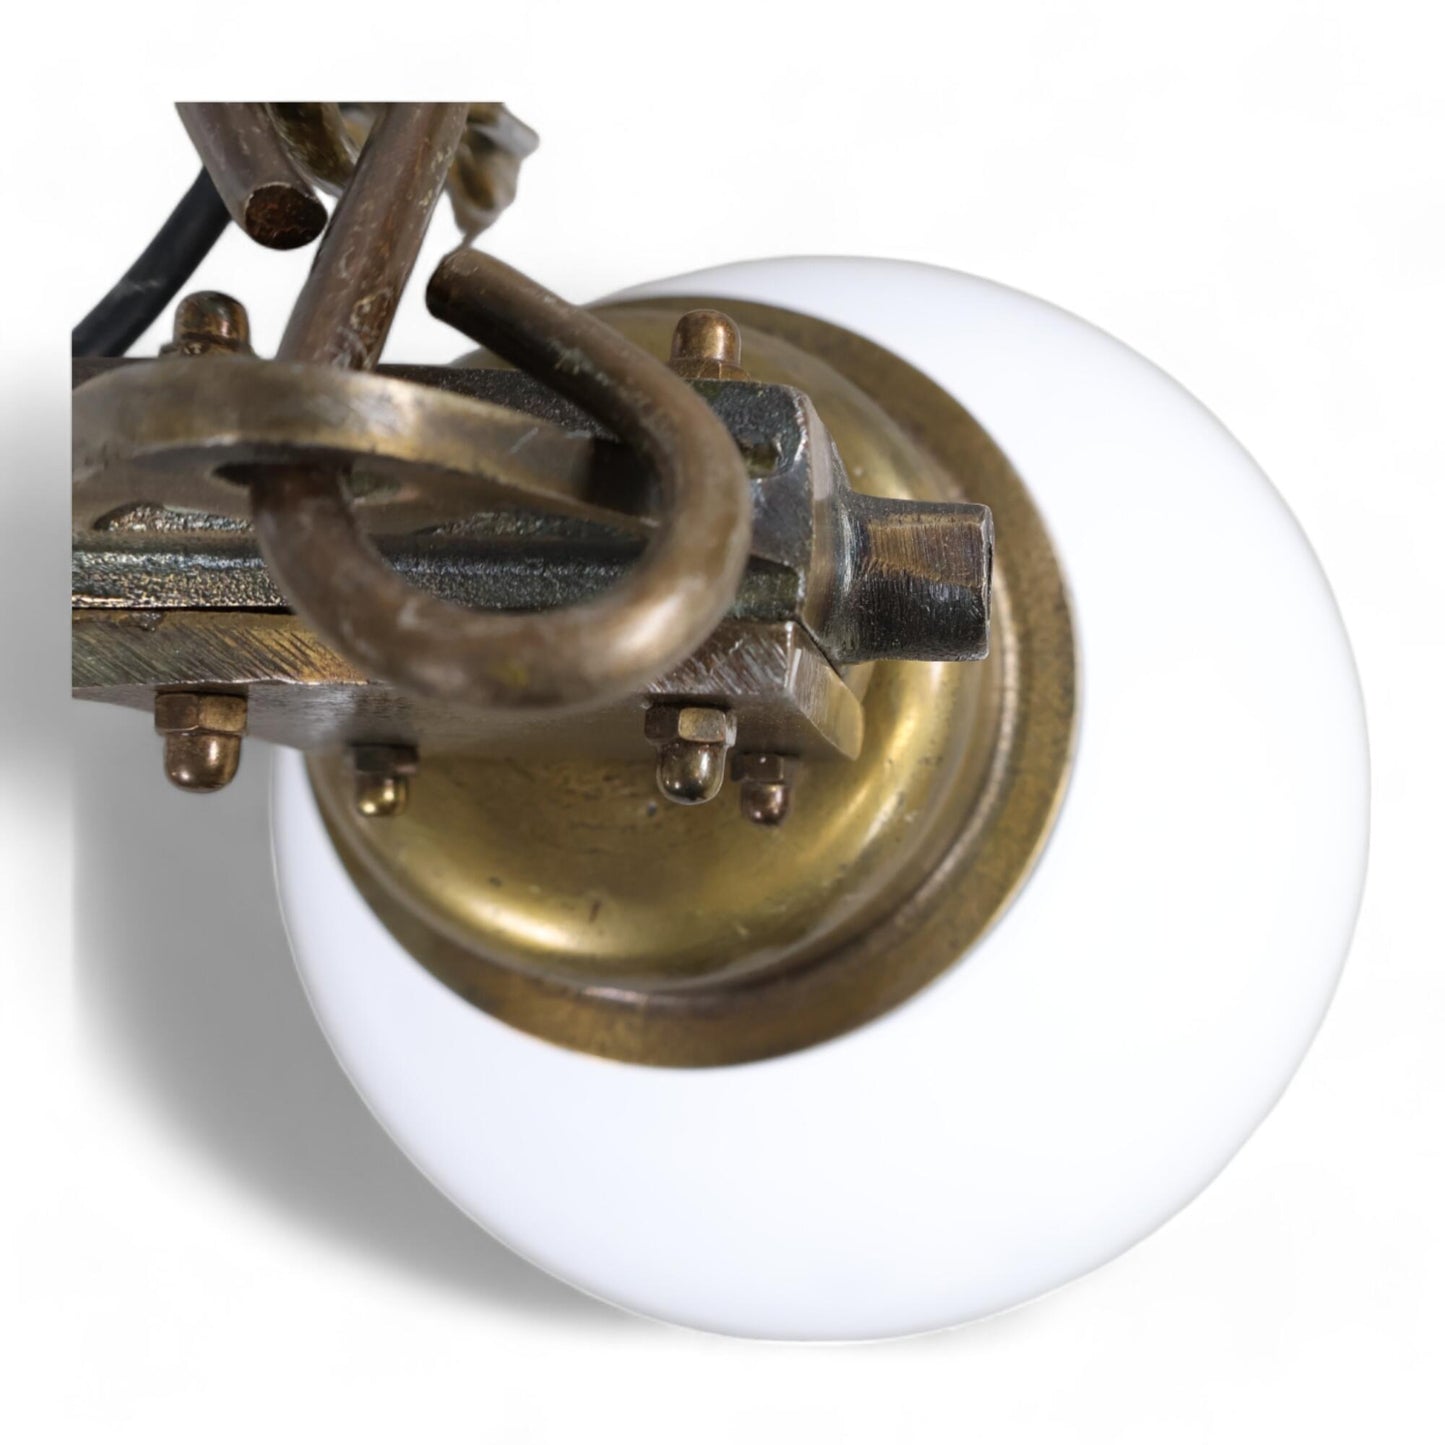 Kvalitetssikret | Manchester taklampe i hvit og bronse fra Bohus